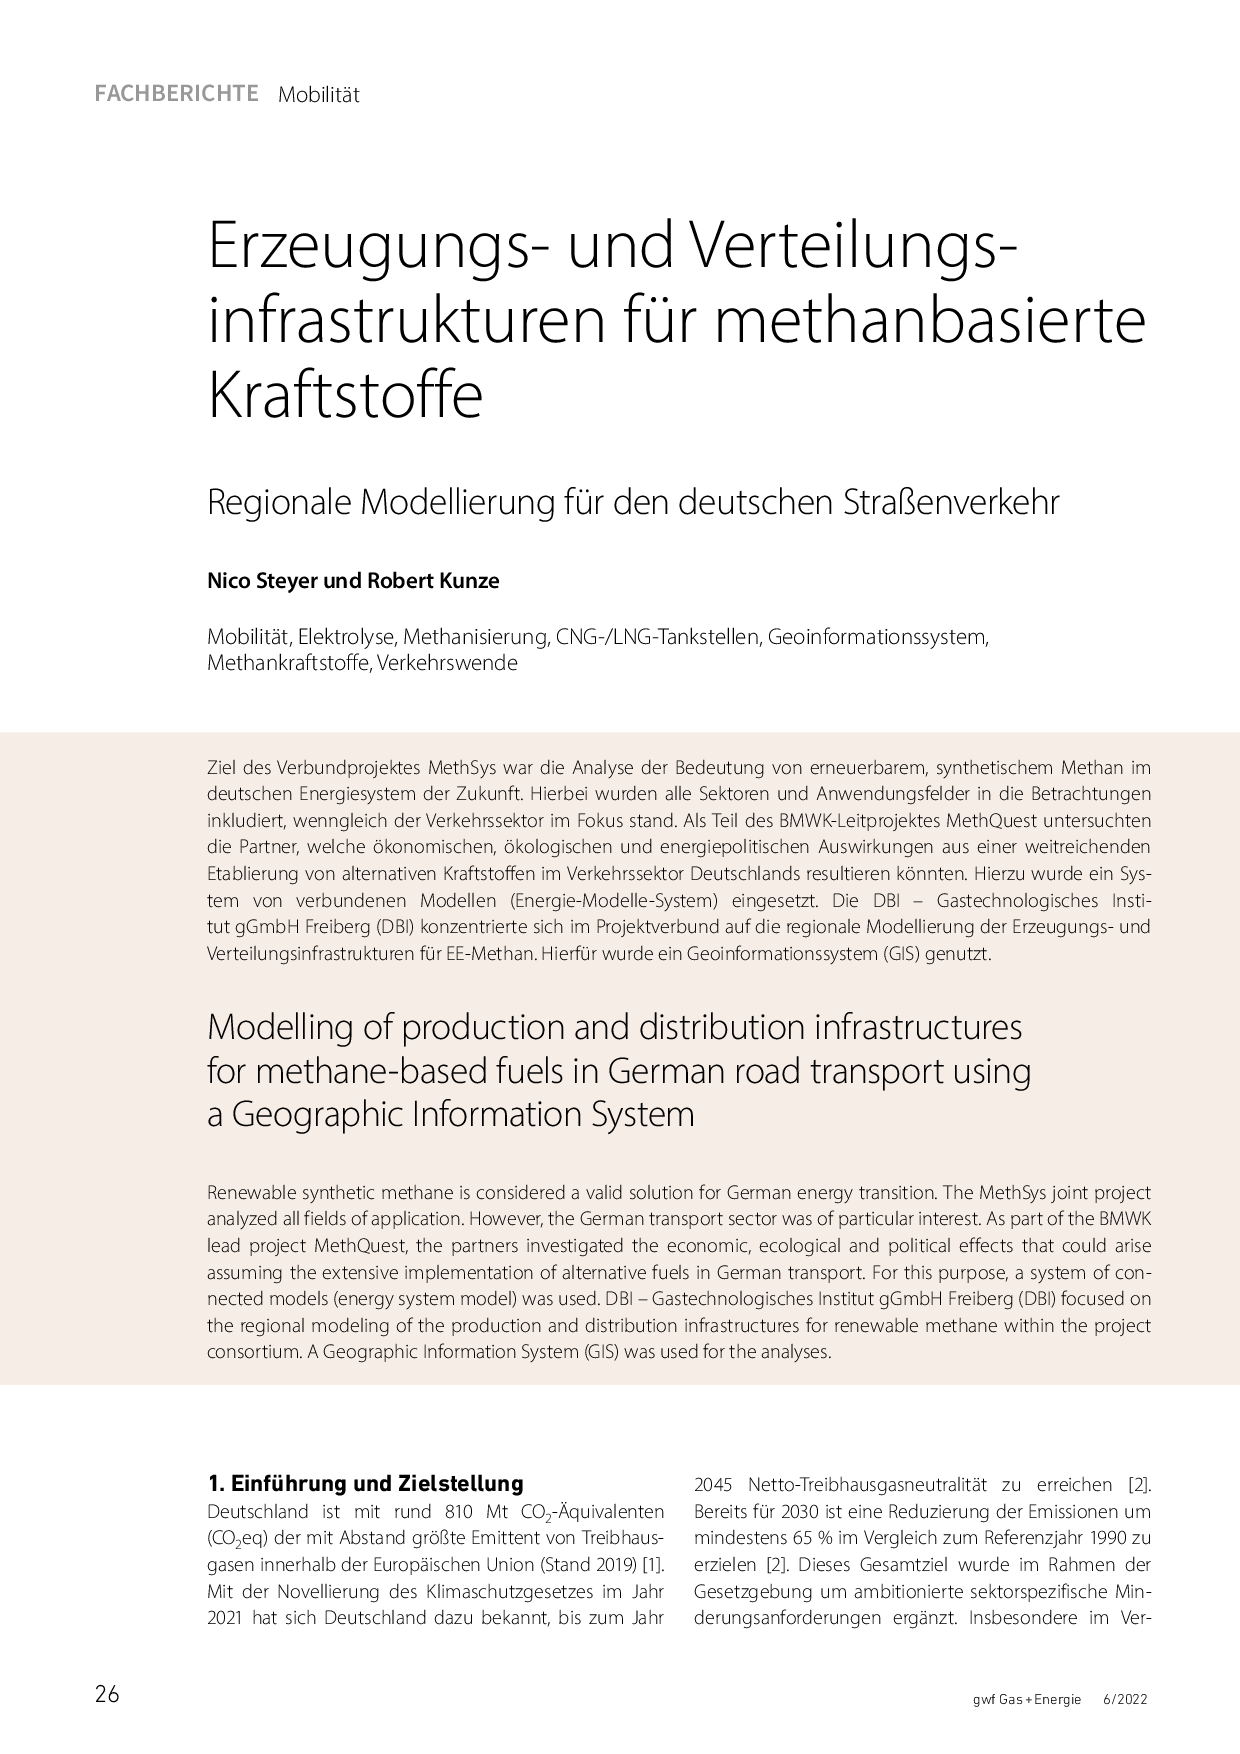 Erzeugungs- und Verteilungsinfrastrukturen für methanbasierte Kraftstoffe